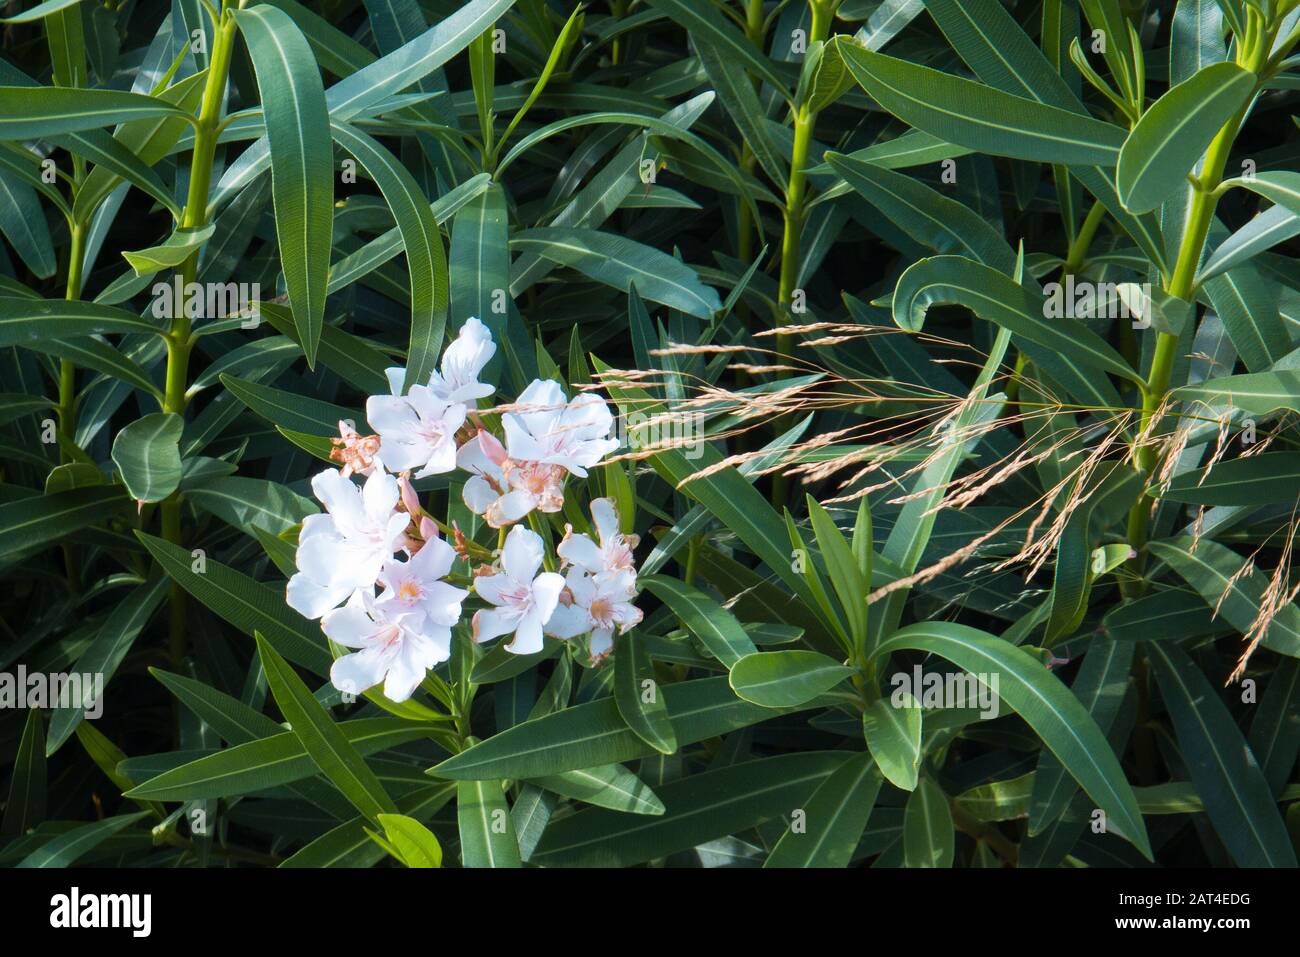 Mediterranean oleander flowering Stock Photo